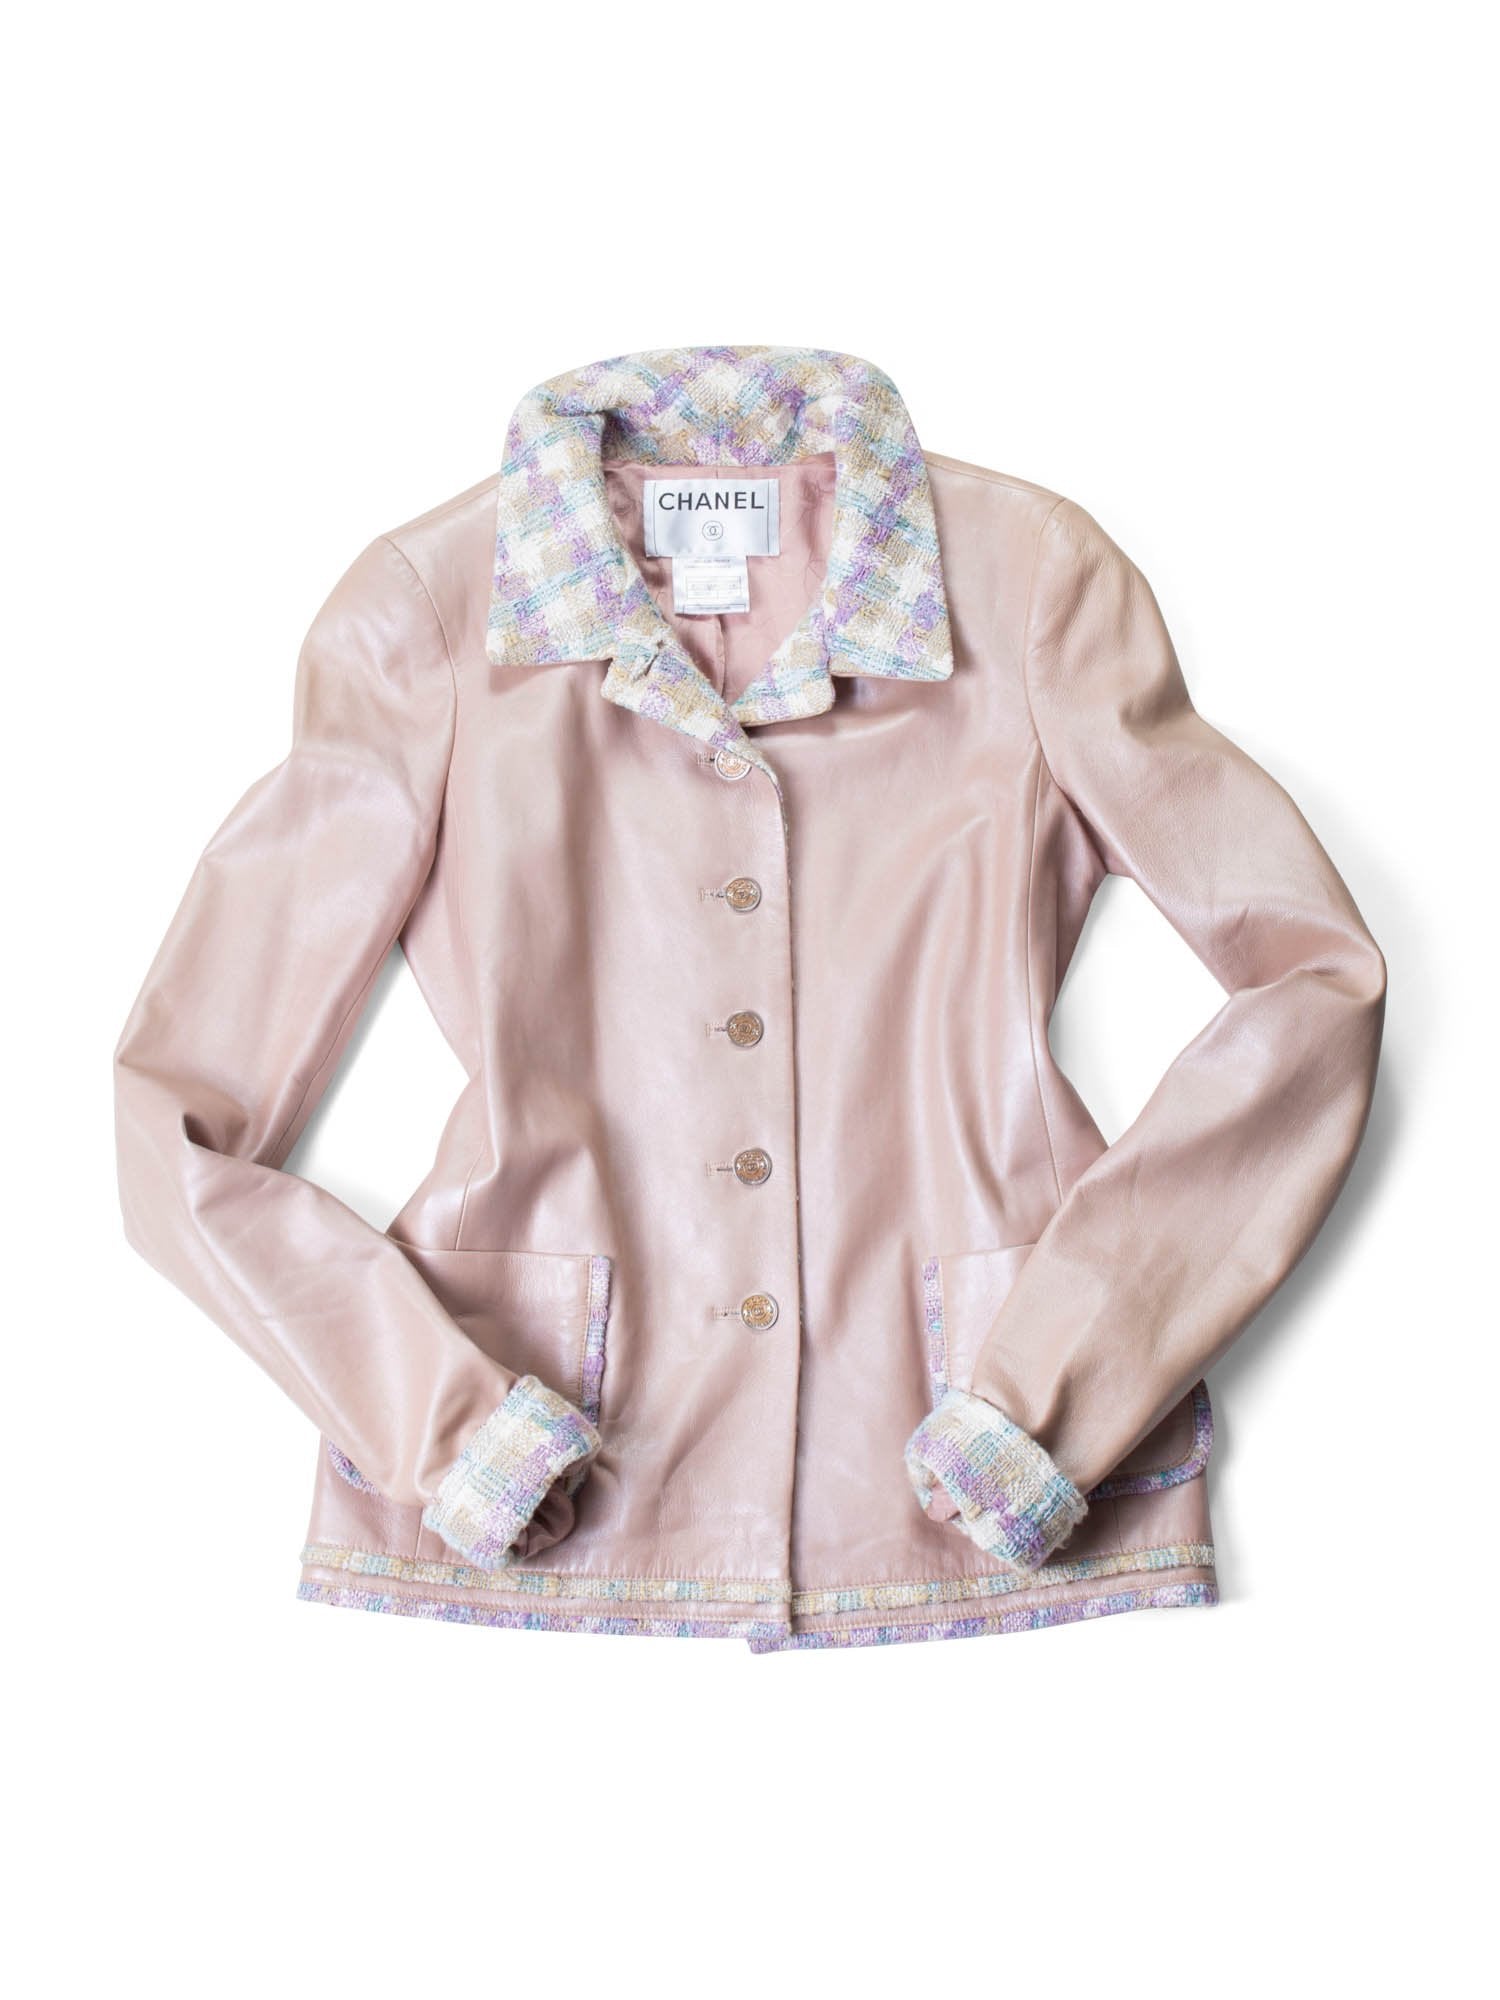 CHANEL CC Leather Tweed Fringe Jacket Pink-designer resale